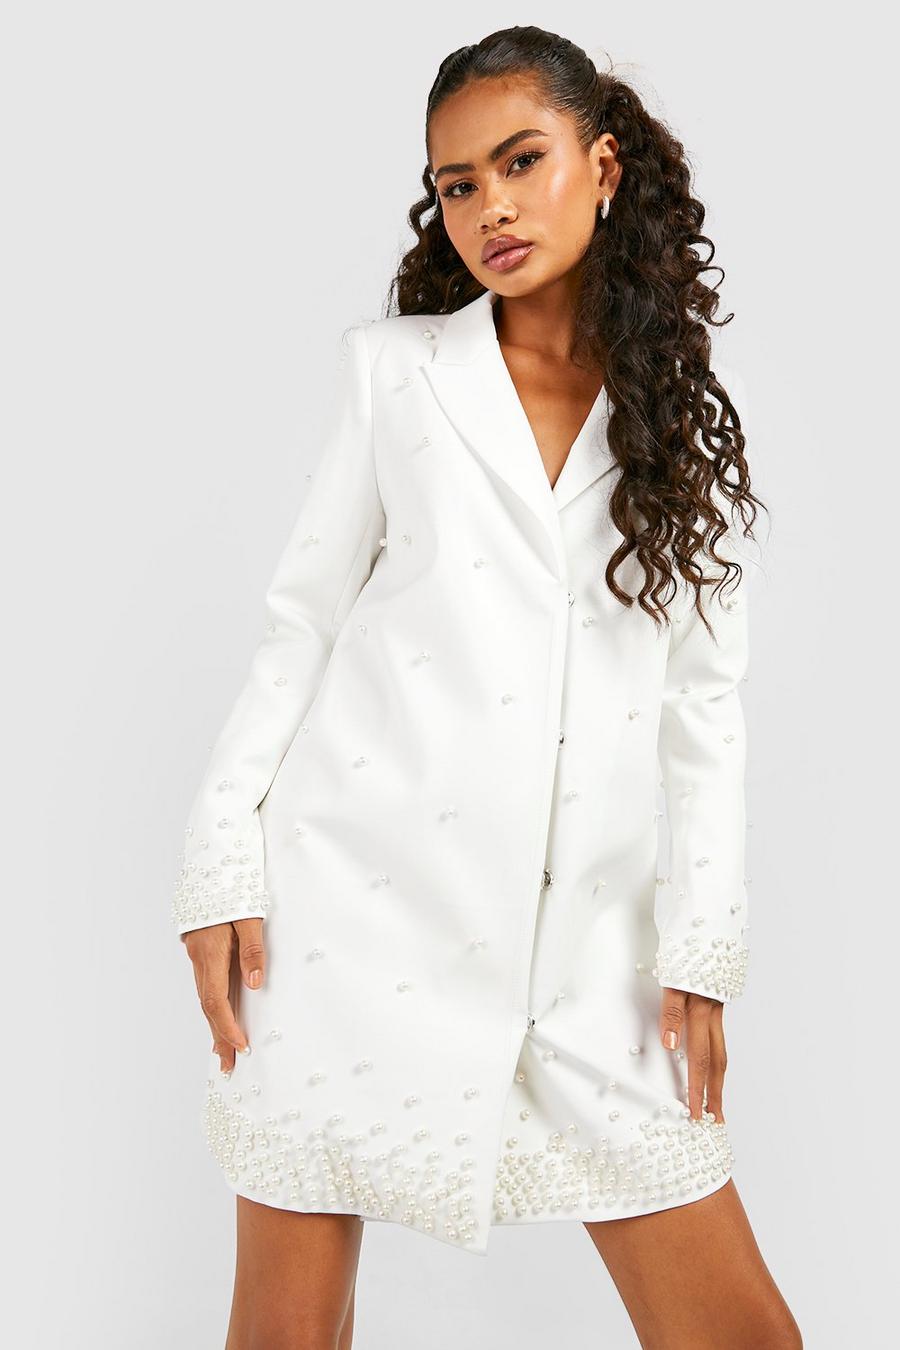 White Ruffle Hem Tailored Blazer Dress